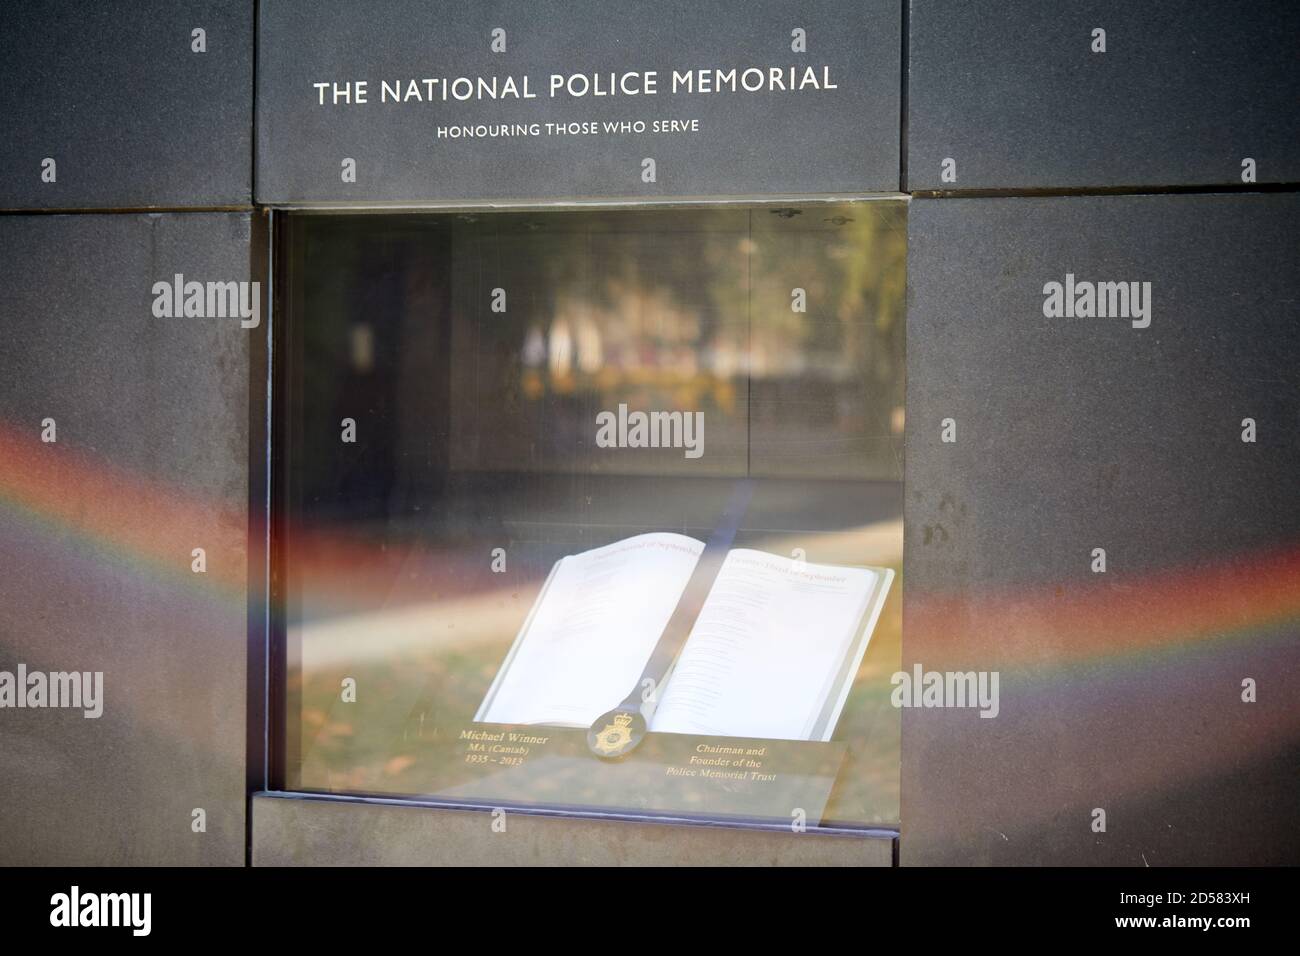 Londra, Regno Unito. 22 settembre 2020: Il National Police Memorial sul Mall. Il Memoriale, inaugurato nel 2005, è stato progettato da Lord Foster e per Arnoldi e. Foto Stock